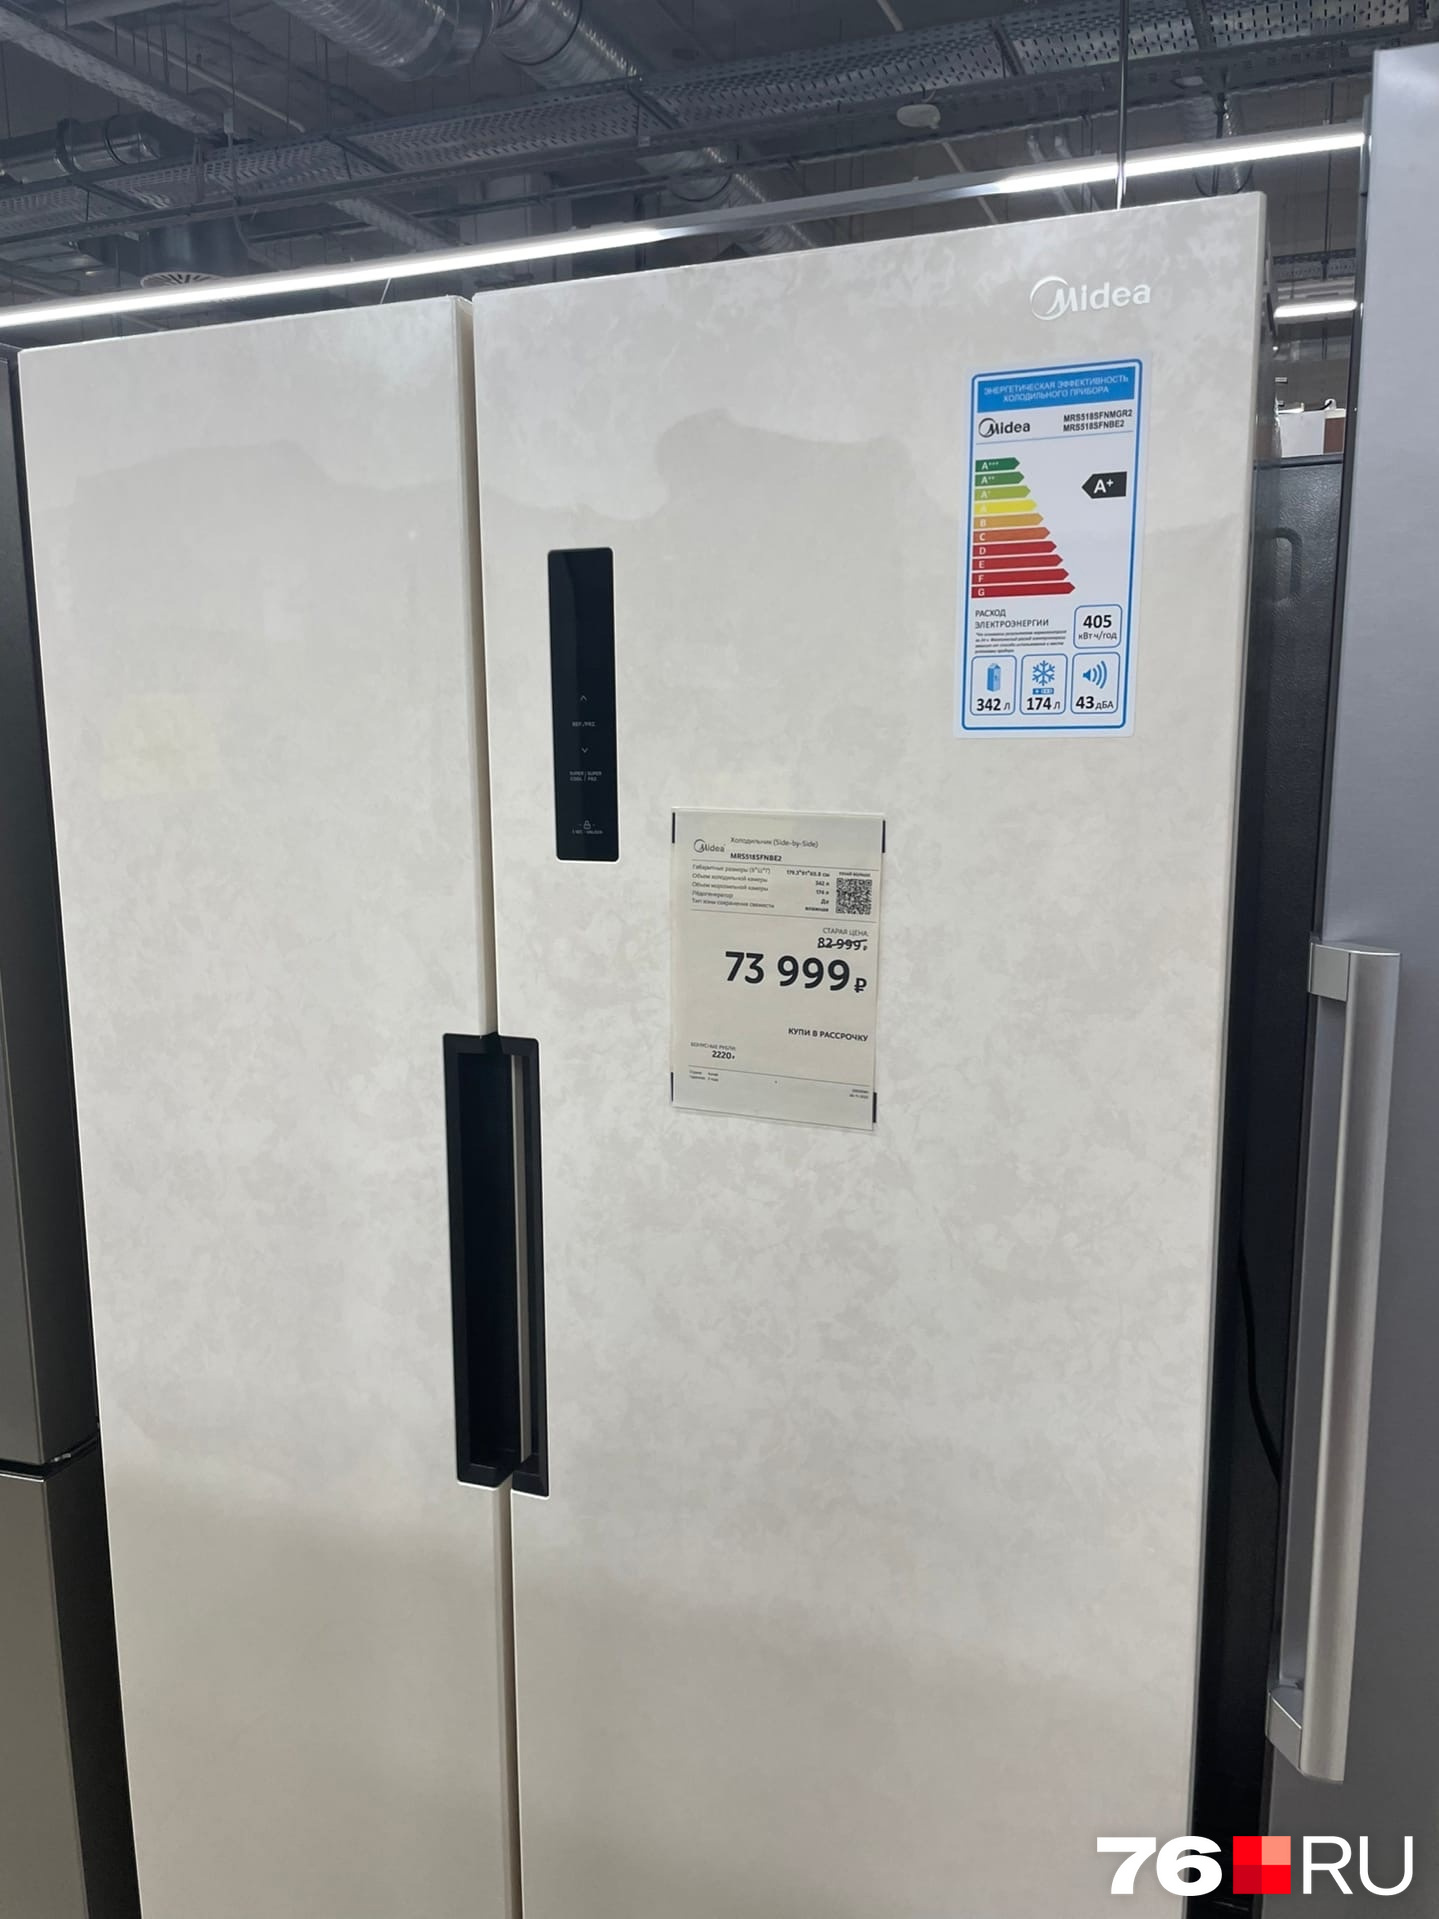 Большой холодильник от китайского производителя без акции обойдется в <nobr class="_">73 тысячи</nobr> рублей